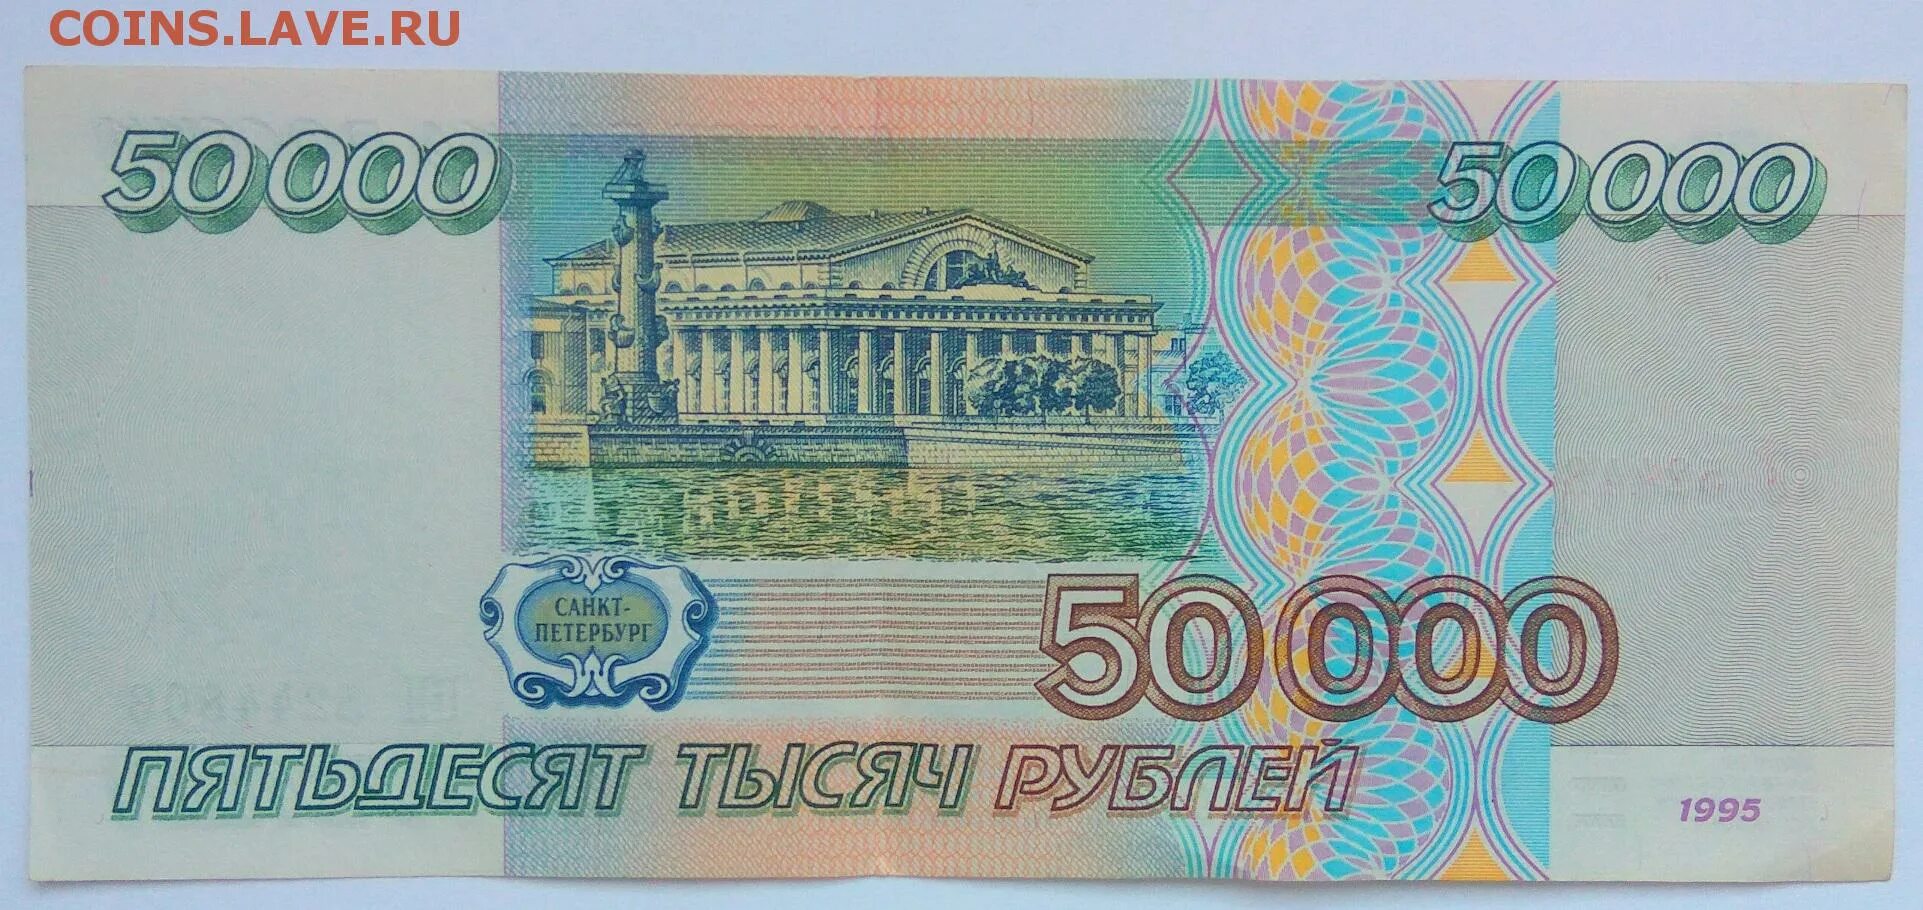 50 Тысяч рублей. 50 Тысяч рублей 1995. 50 0000 Рублей 1995. Т50000. Больше пятидесяти тысяч